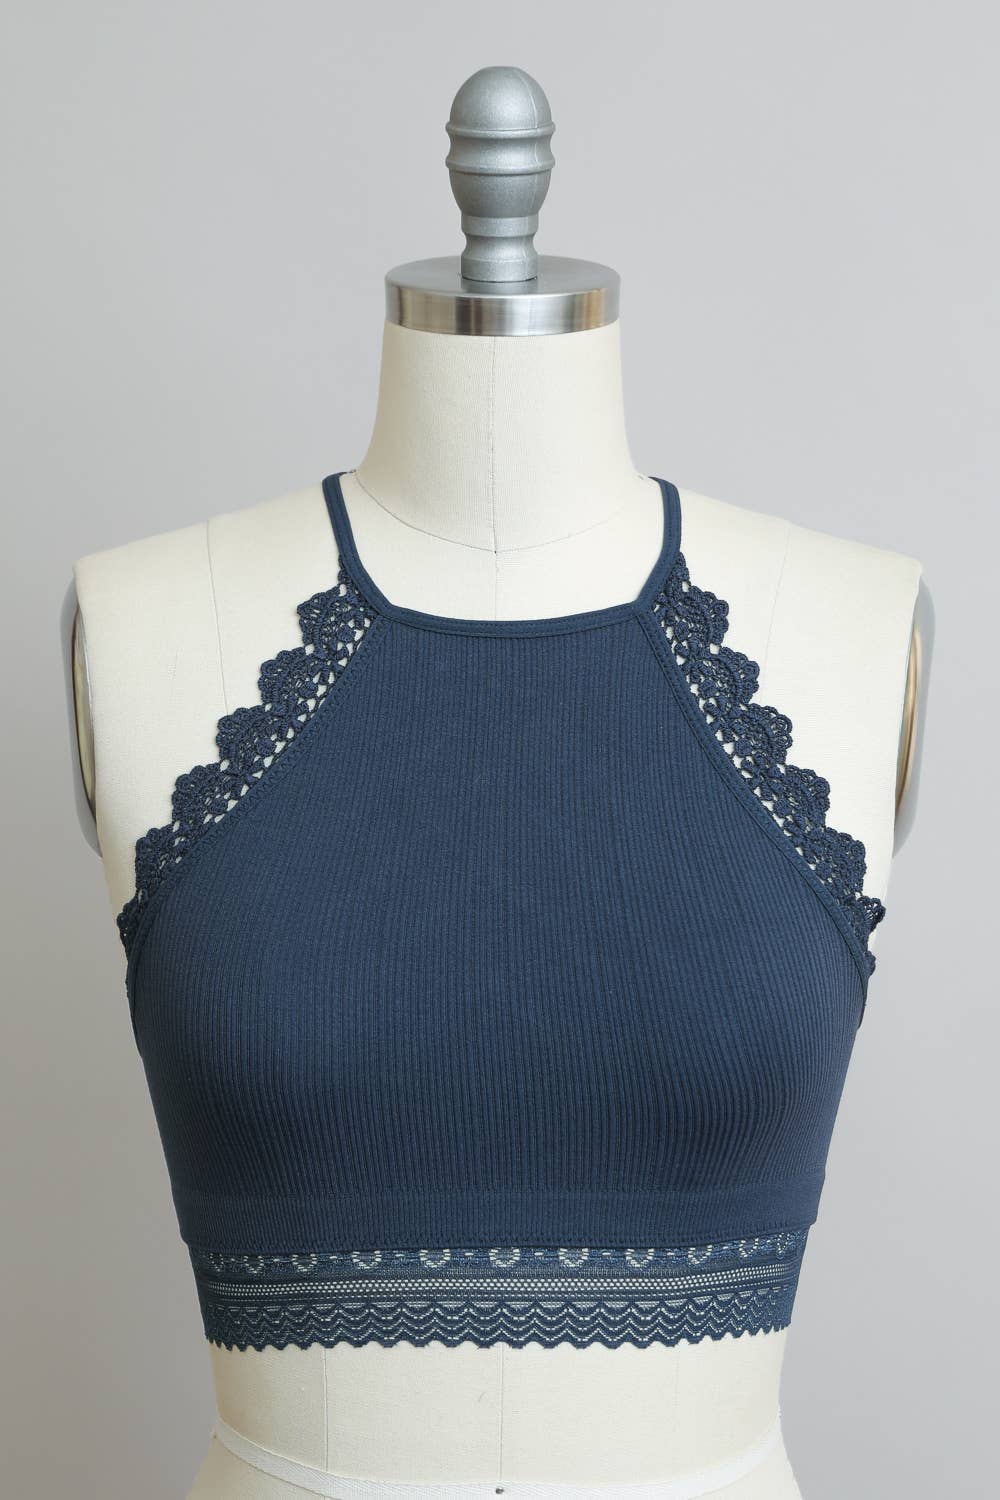 High Neck Crochet Lace Trim Bralette: Black